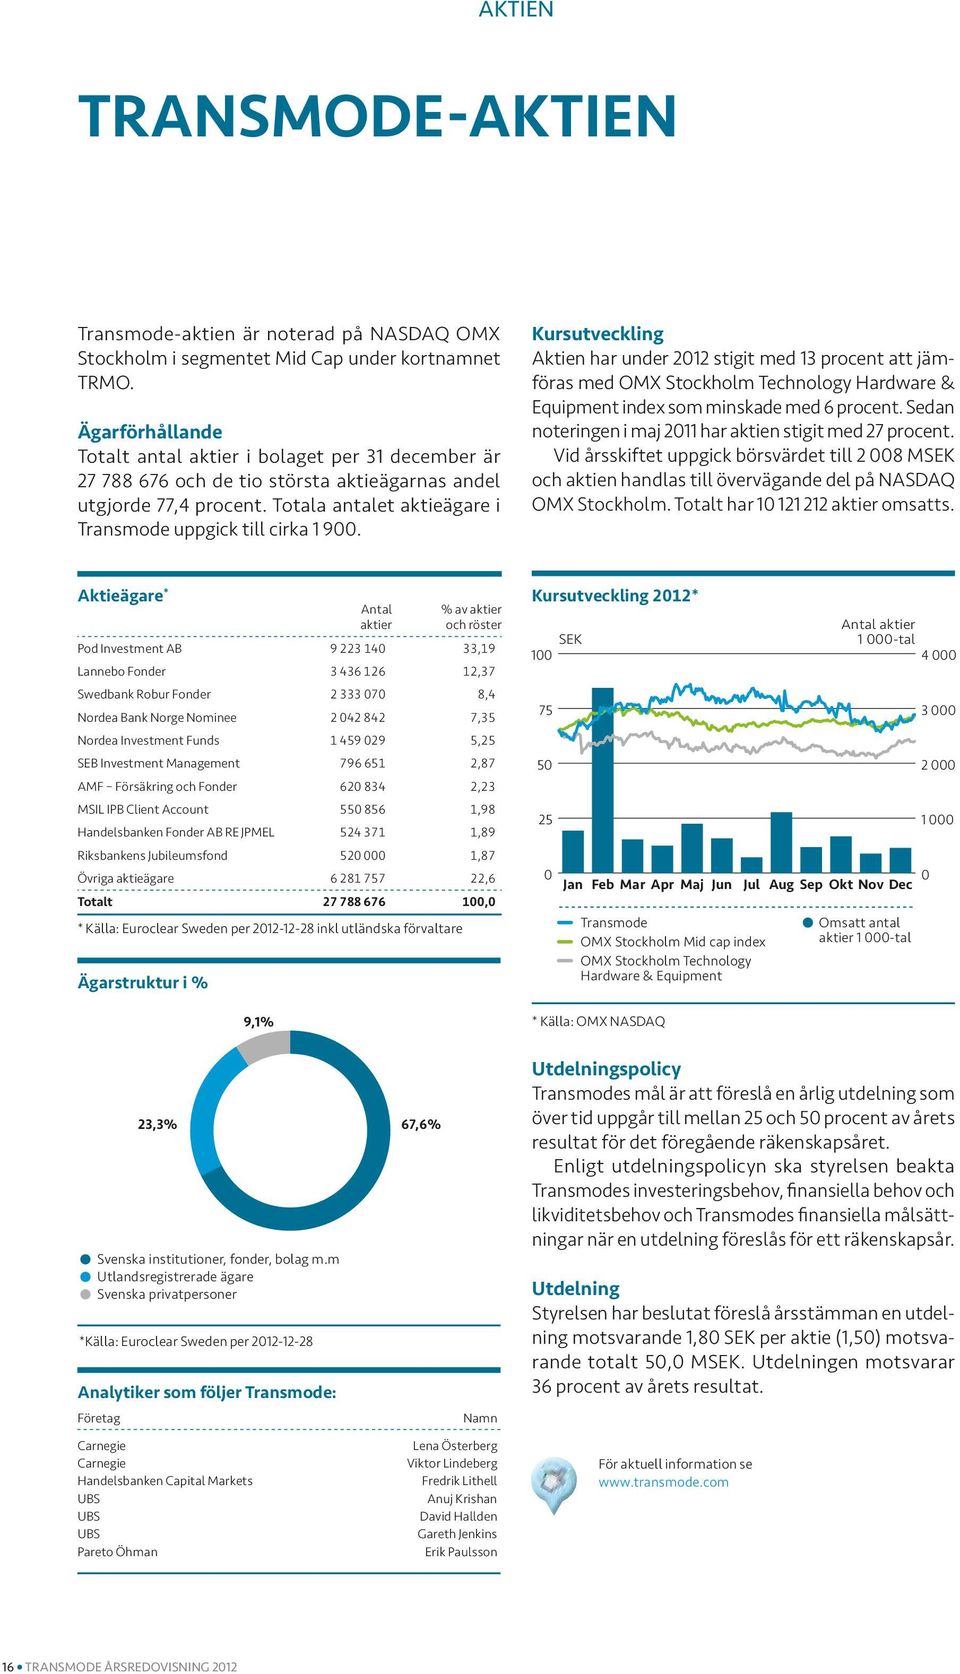 Kursutveckling Aktien har under 2012 stigit med 13 procent att jämföras med OMX Stockholm Technology Hardware & Equipment index som minskade med 6 procent.